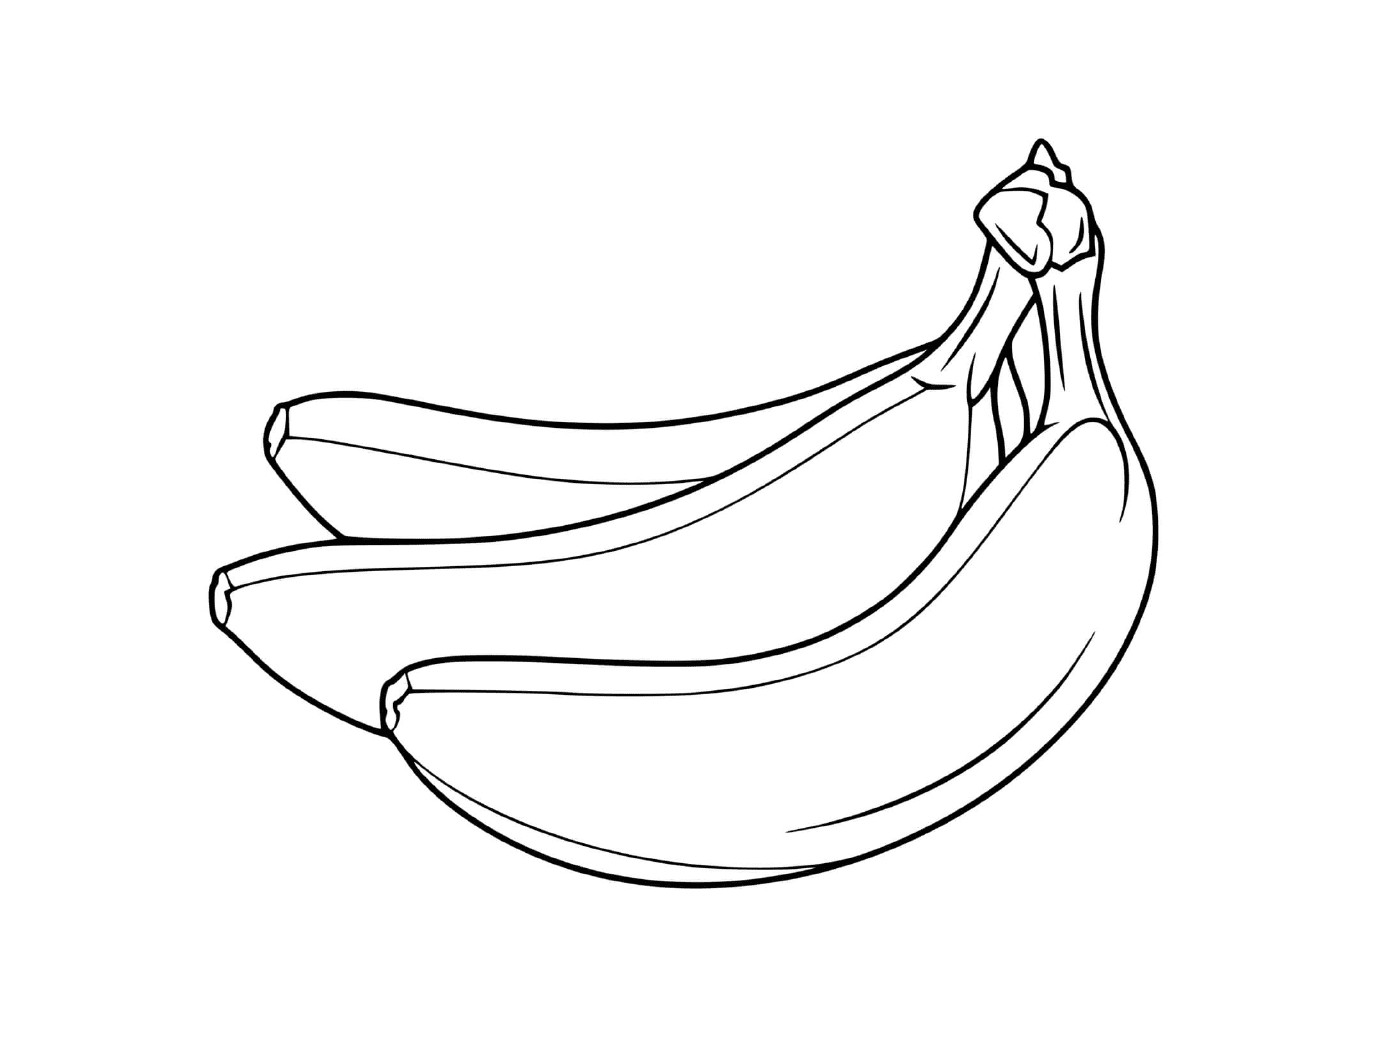  Duas bananas em um fundo branco 